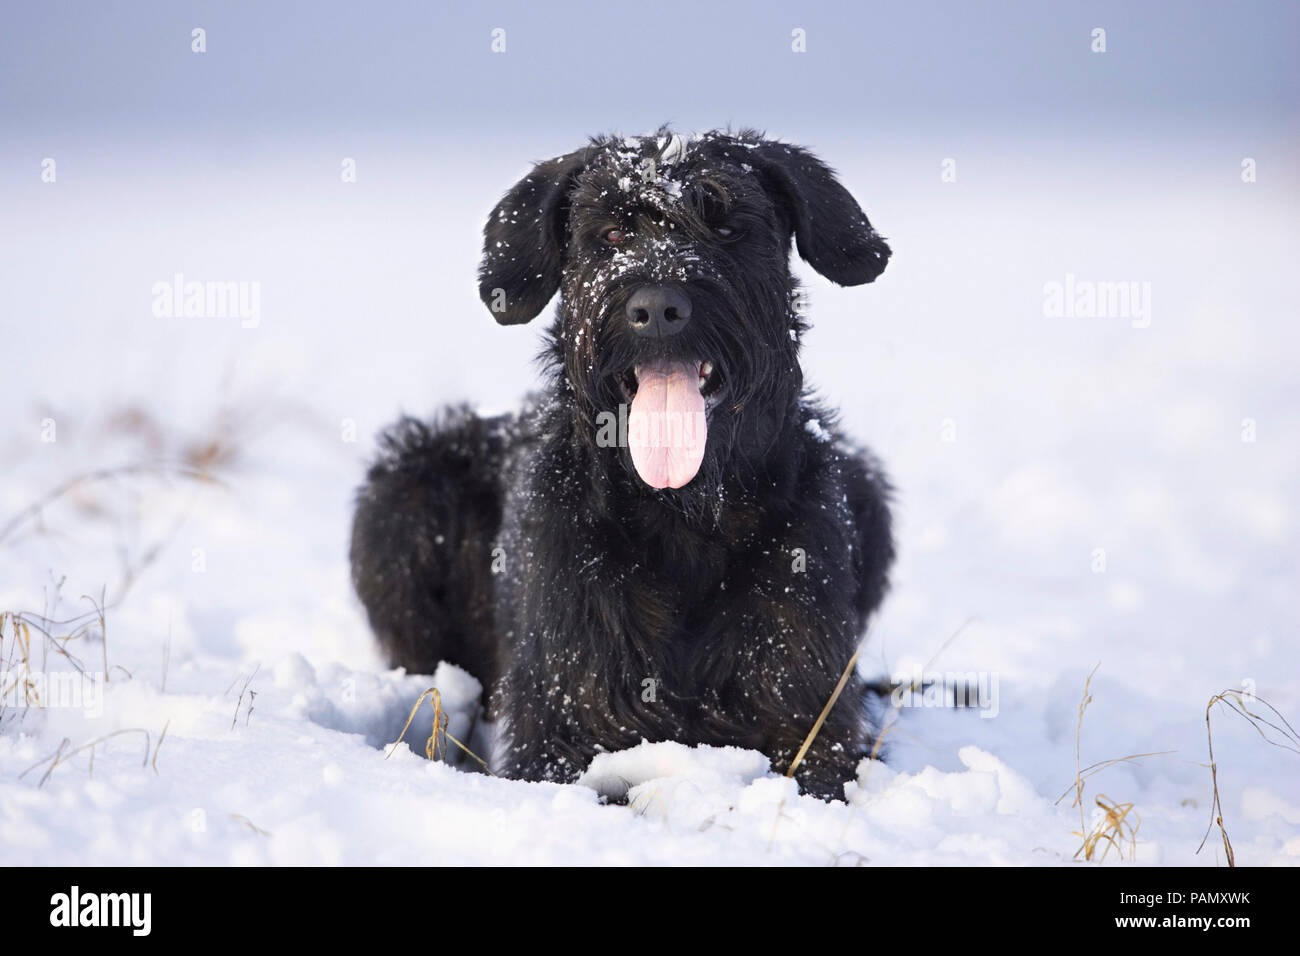 Schnauzer gigante. Perro adulto tumbado en la nieve, jadeando. Alemania Foto de stock